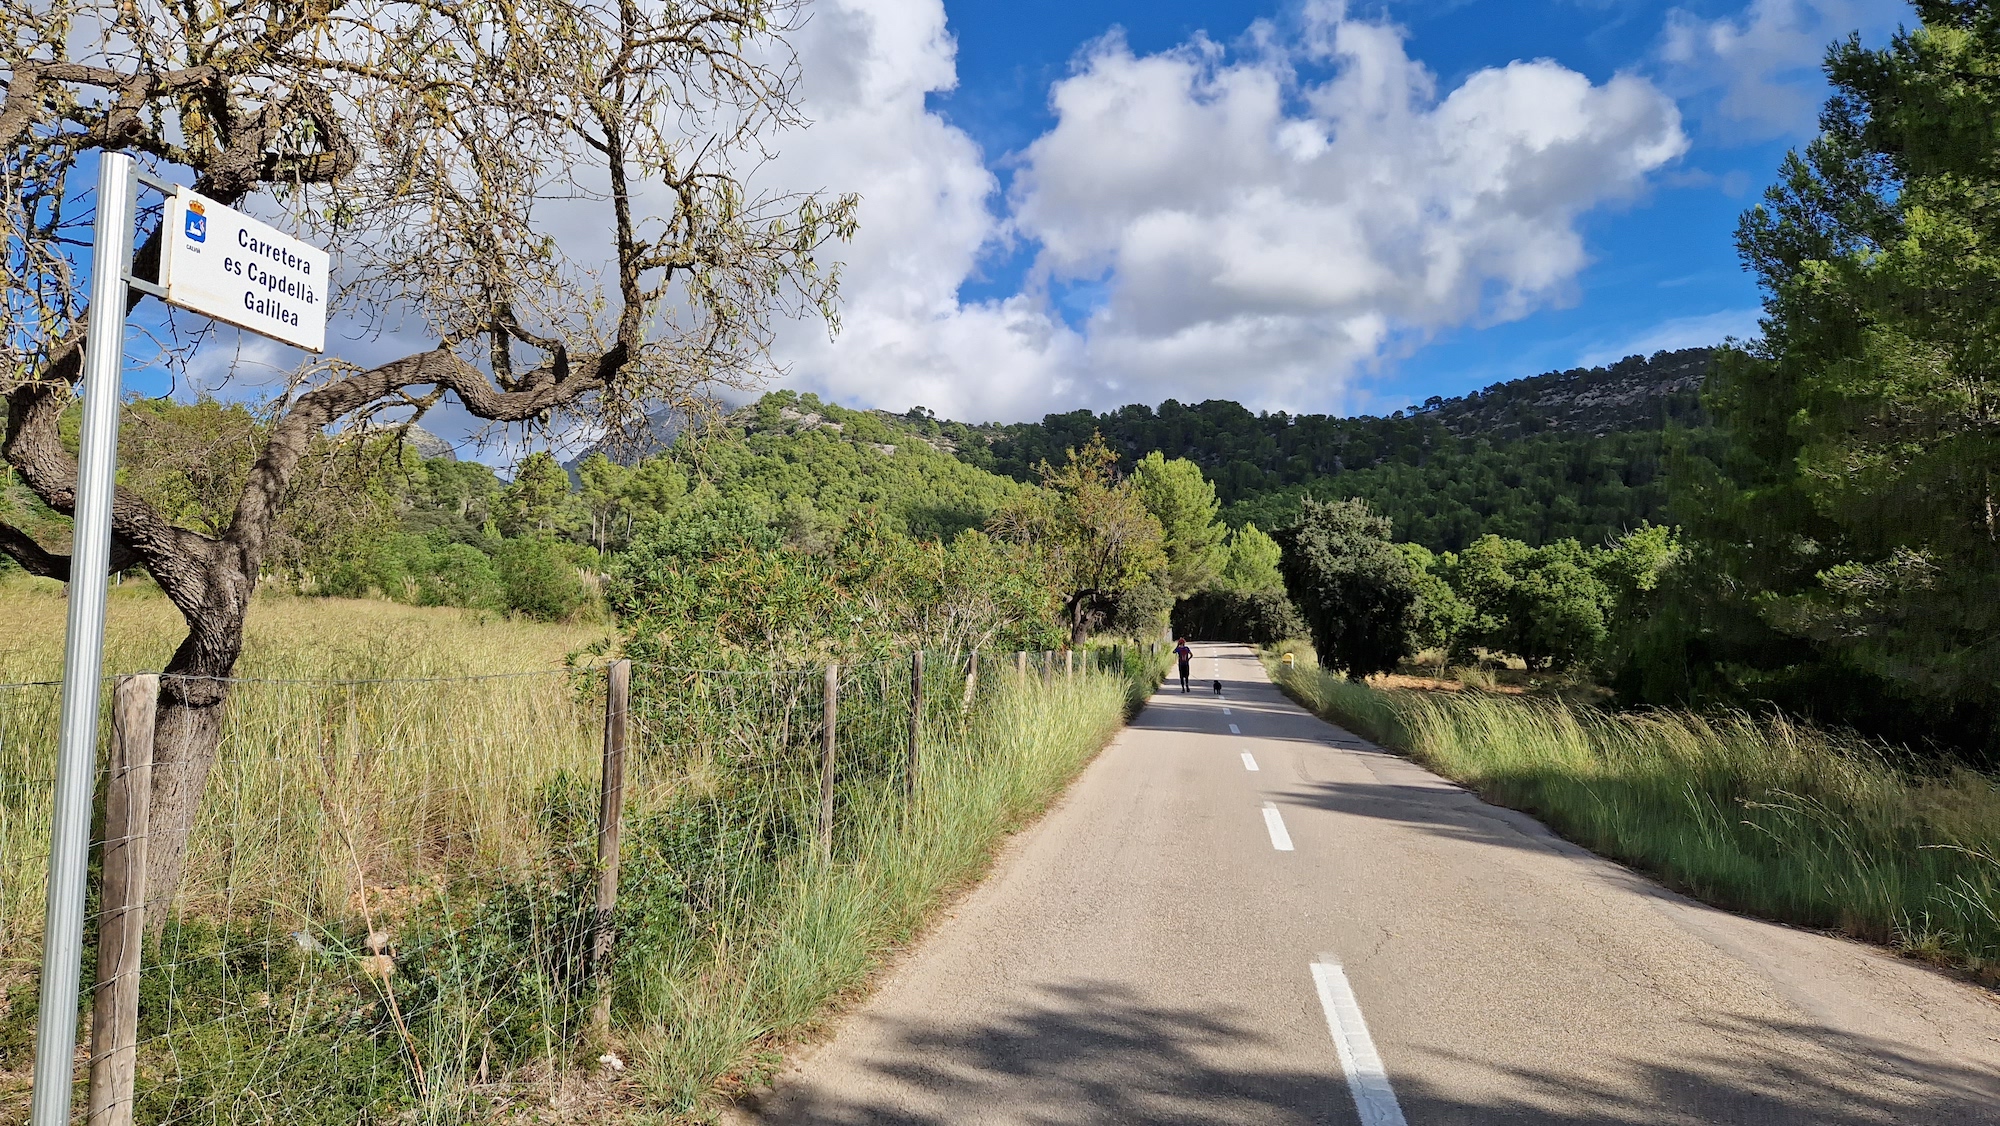 Carretera de Es Capdellà a Galilea